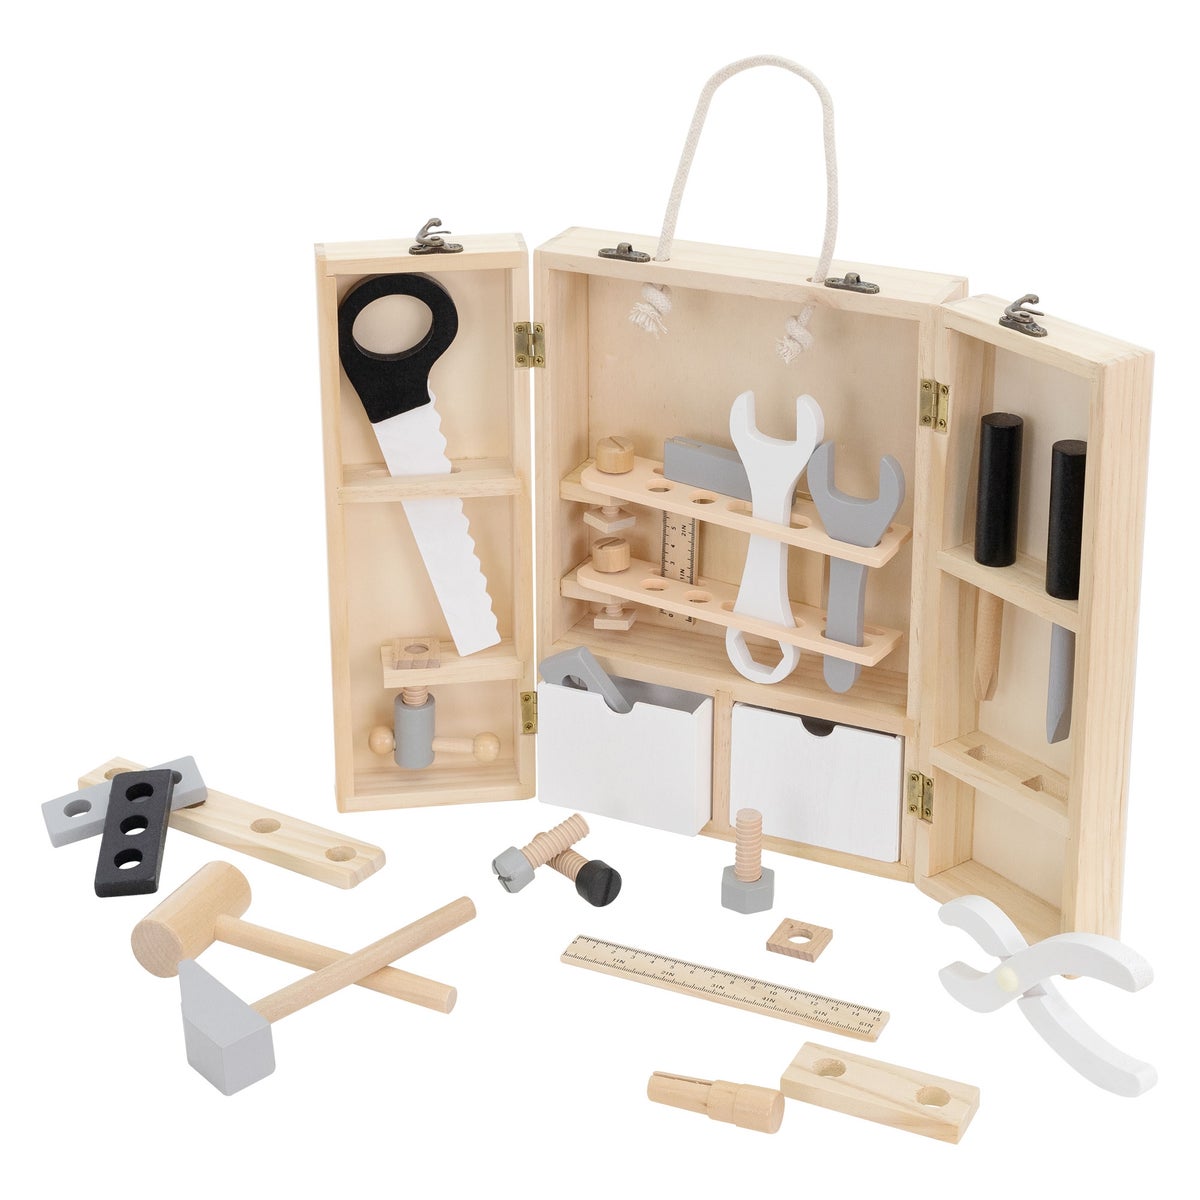 Joyz Werkzeugkasten für Kinder mit 8 Werkzeugen, Multifunktions-Werkzeugkoffer, Montessori Spielzeug ab 2 Jahren, Pädagogische Holzspielzeug, Kinderwerkzeug Set Werkzeugkiste Holzwerkzeug Geschenk